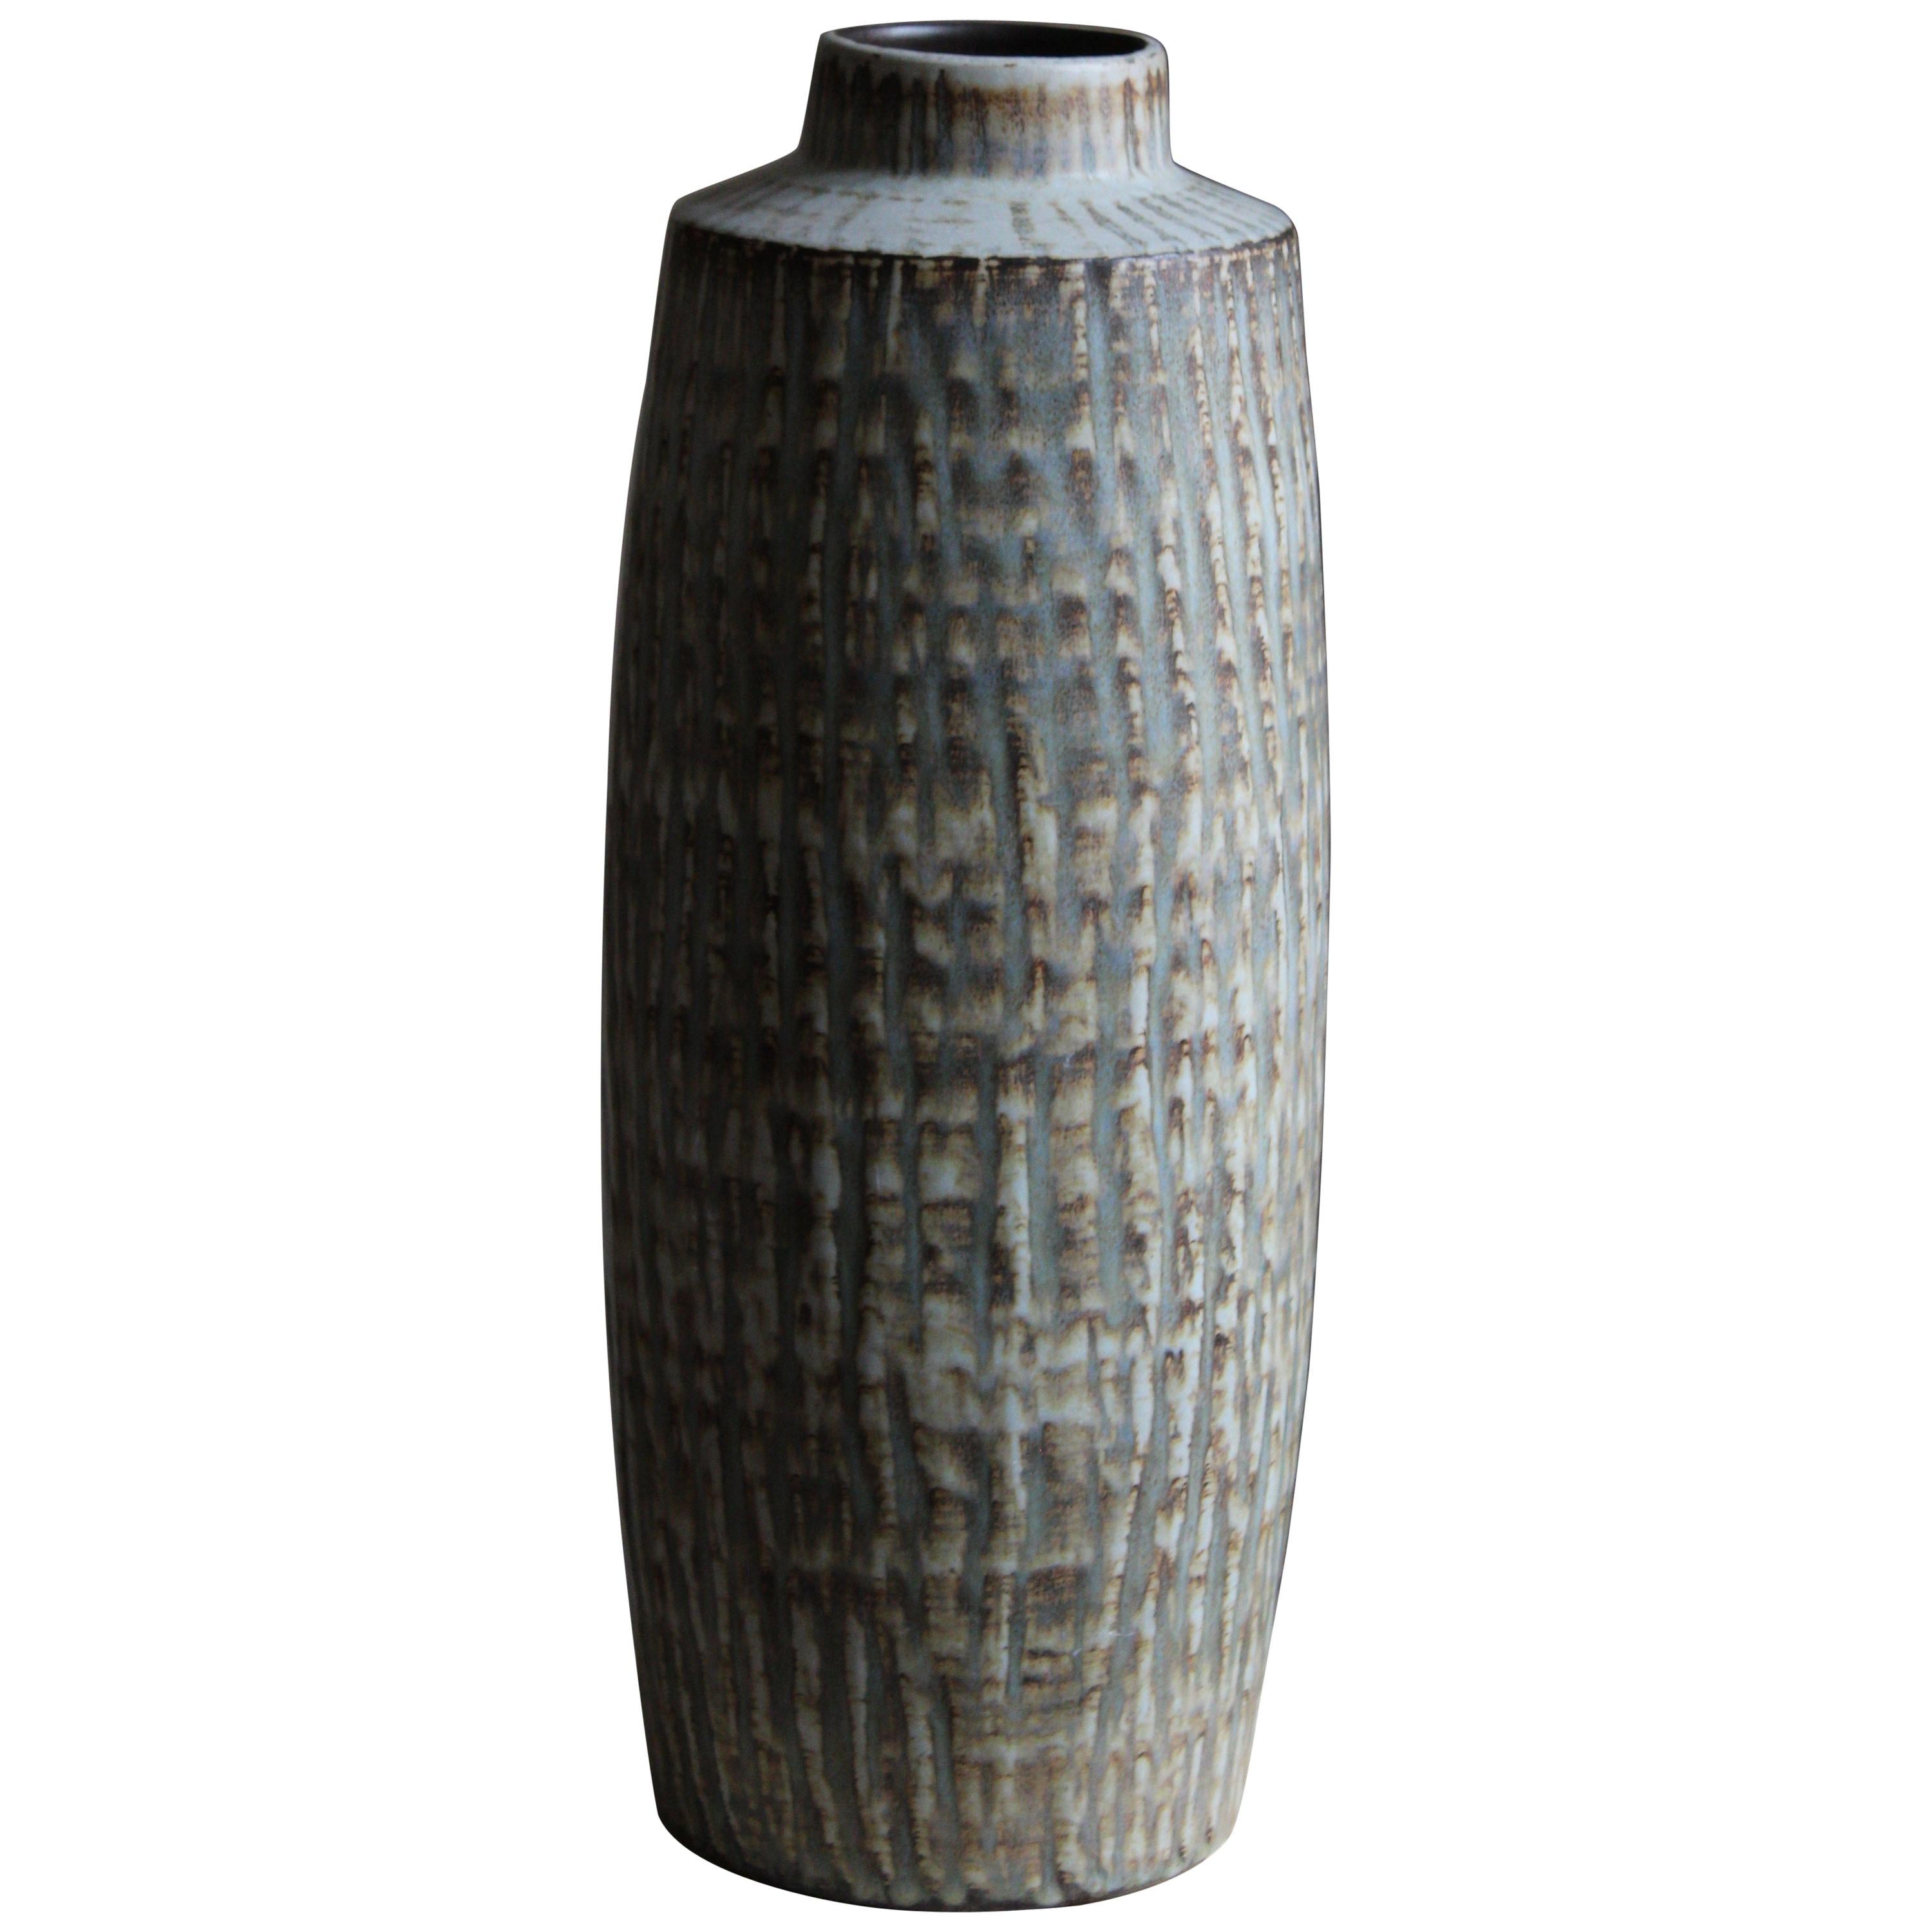 Gunnar Nylund, Large Floor Vase, Glazed Stoneware, Rörstand, Sweden, 1950s